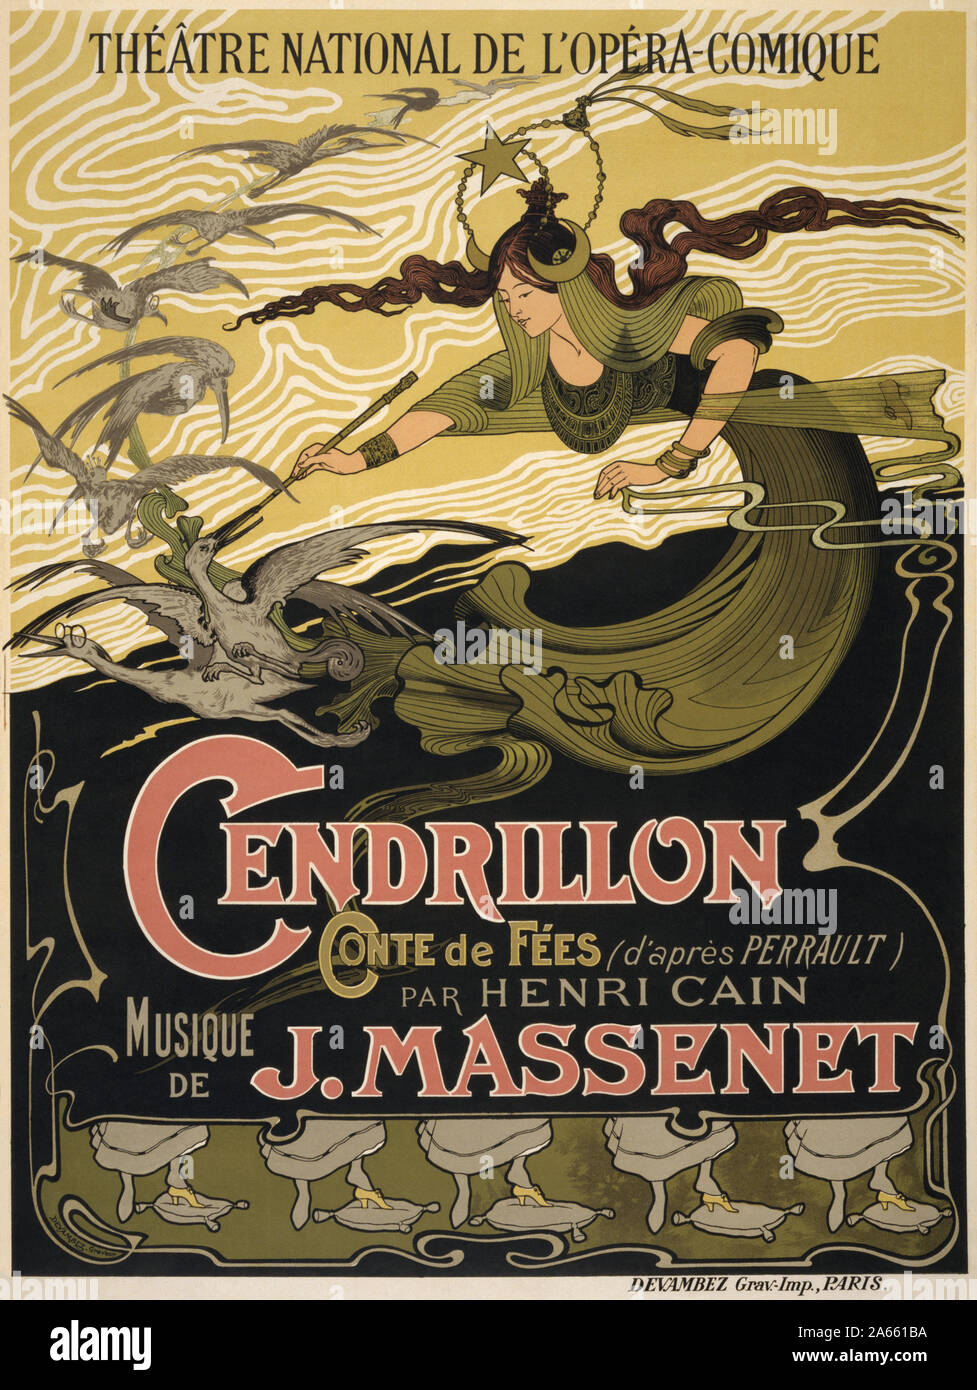 Émile Bertrand - Jules Massenet - Cendrillon poster Stock Photo